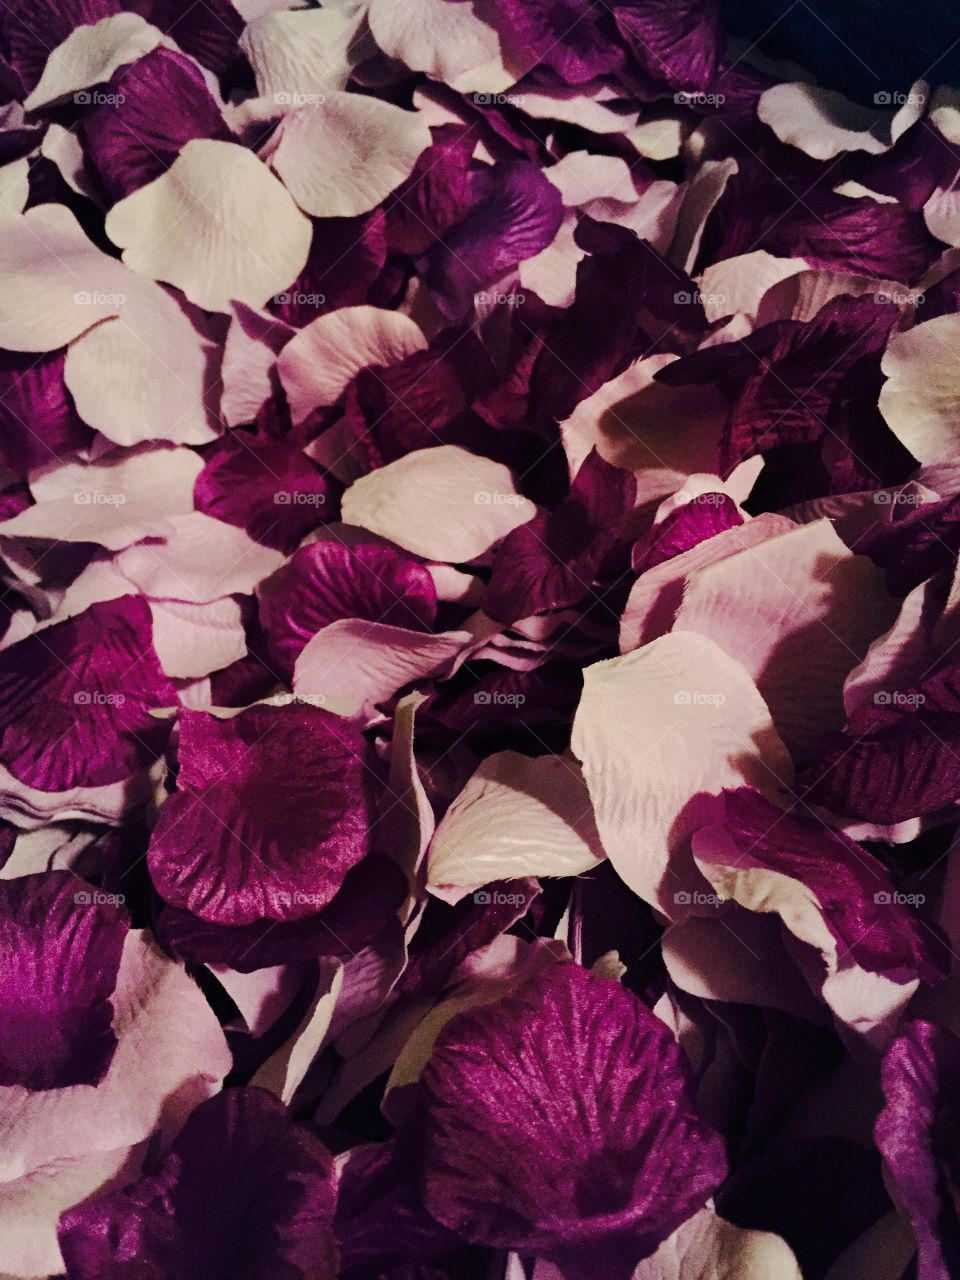 Rose petals . Purple and lilac rose petals